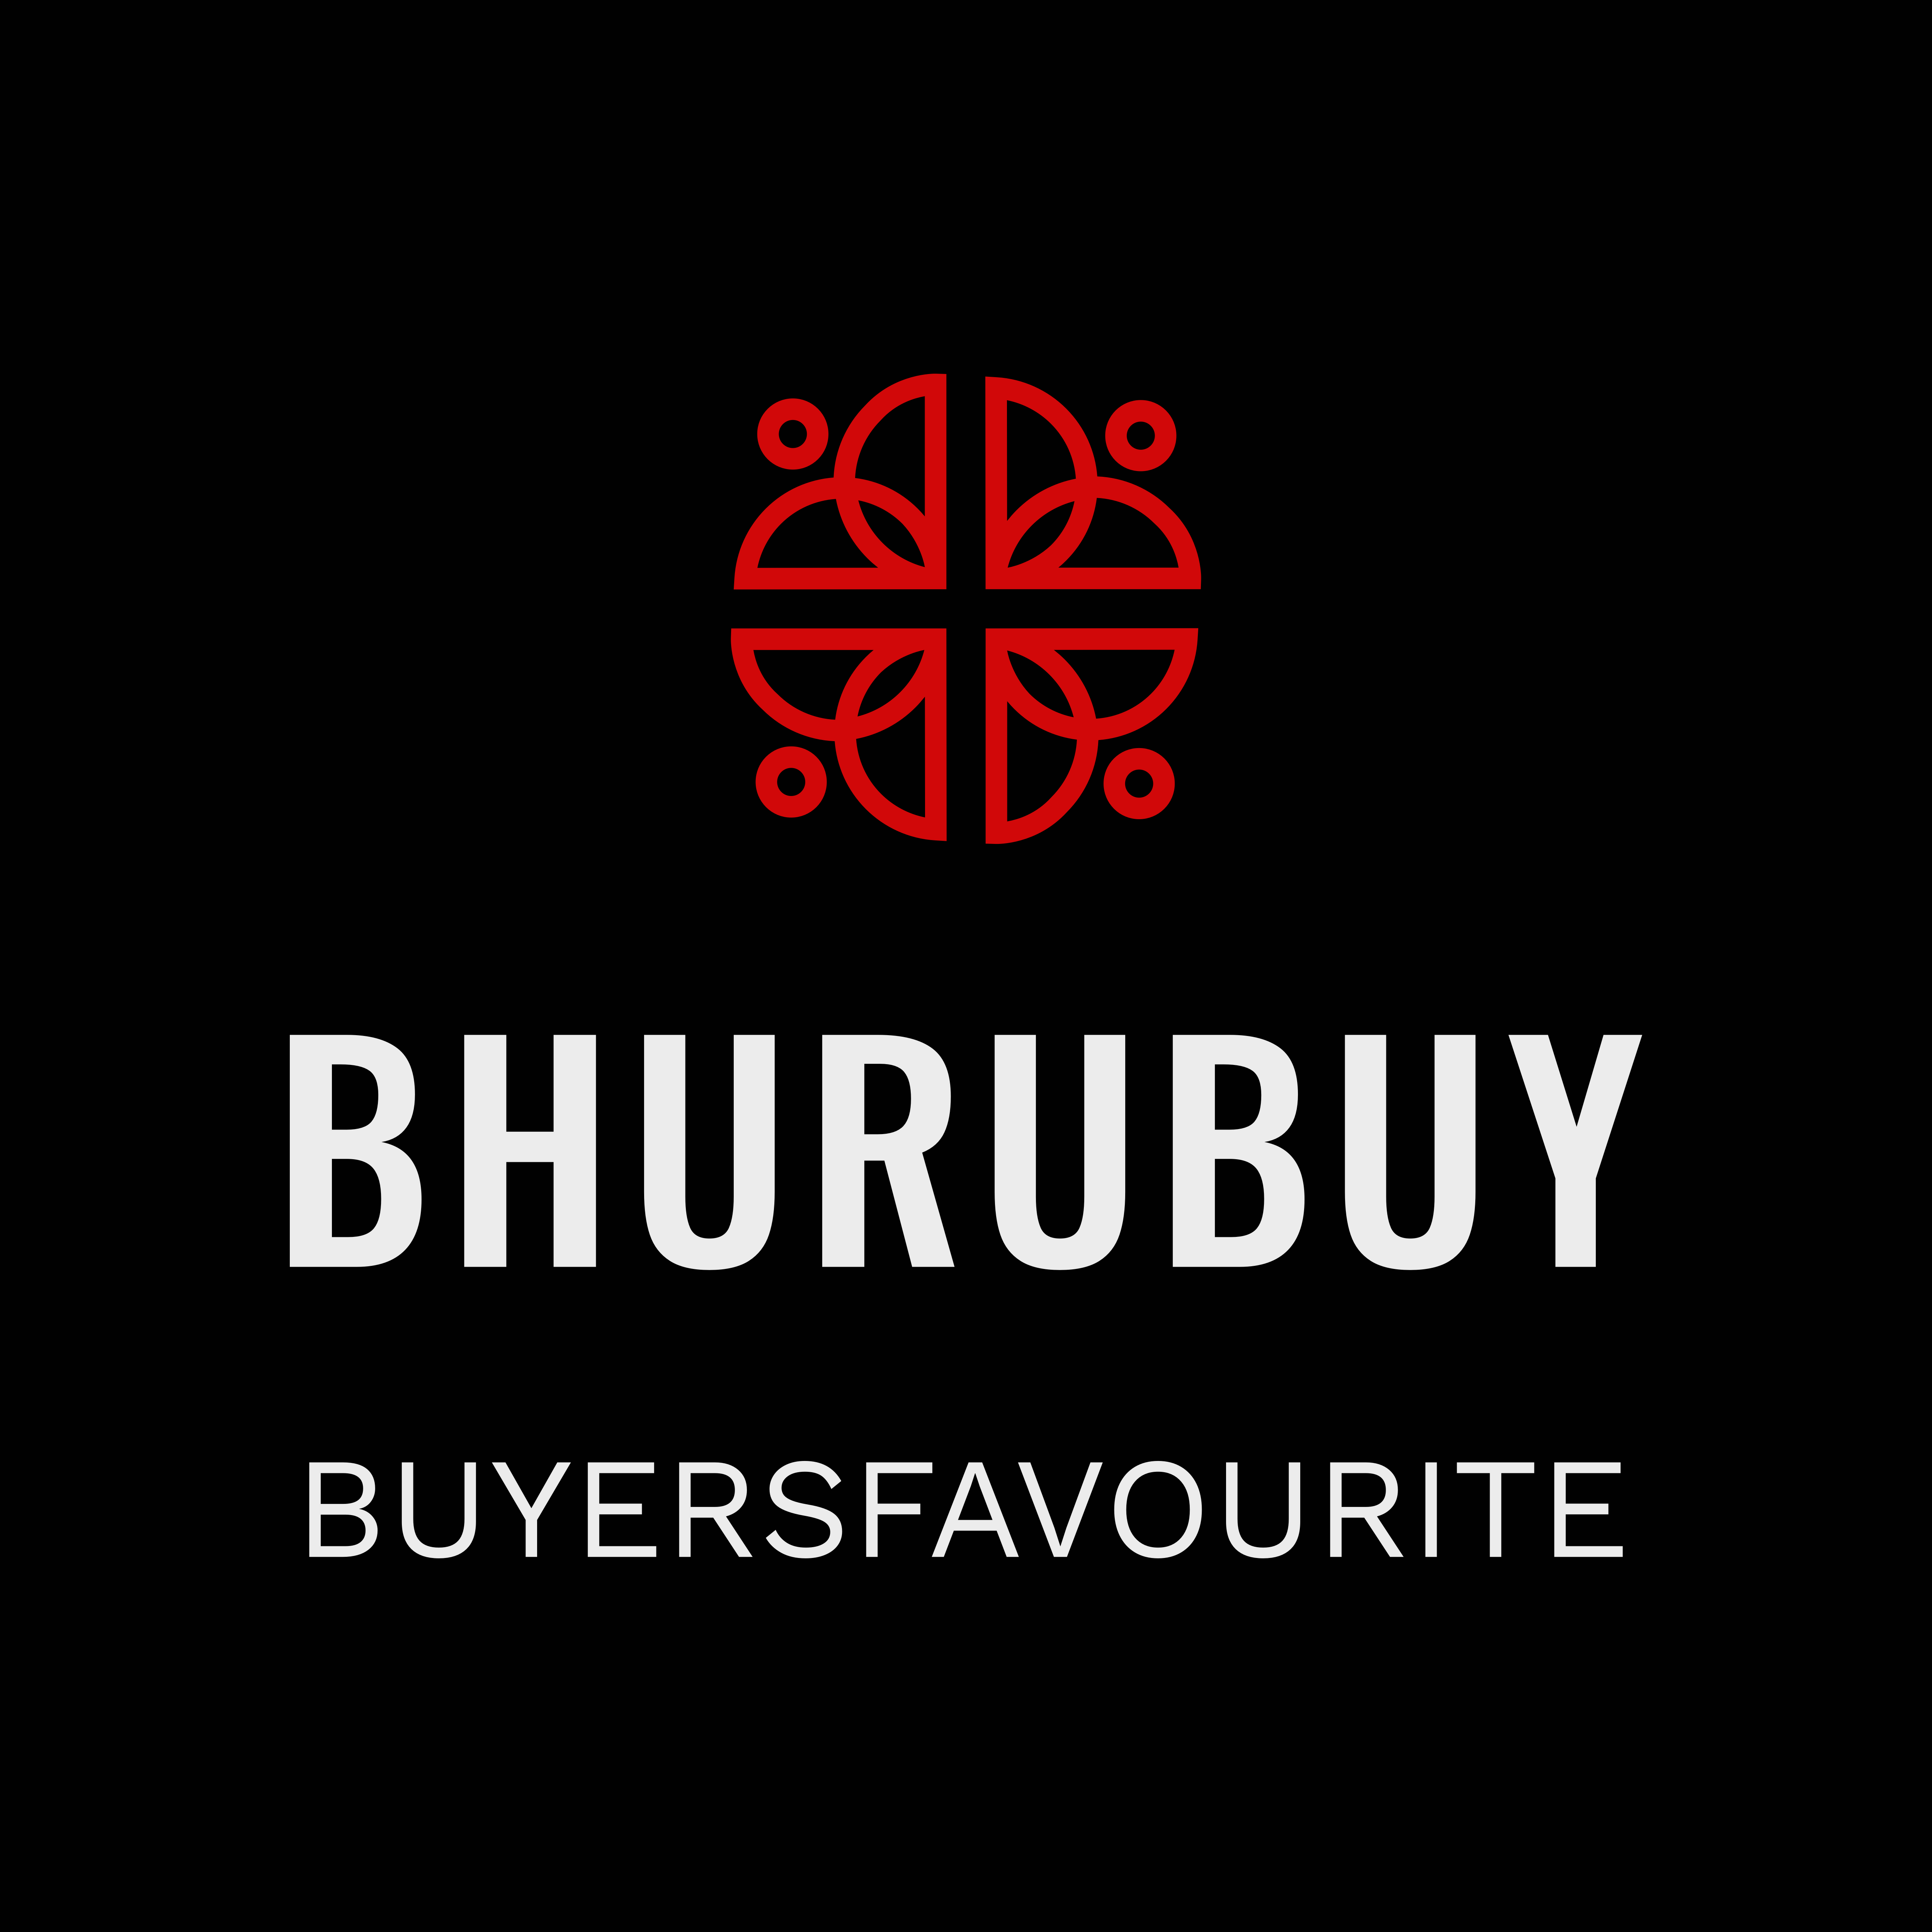 BhuruBuy